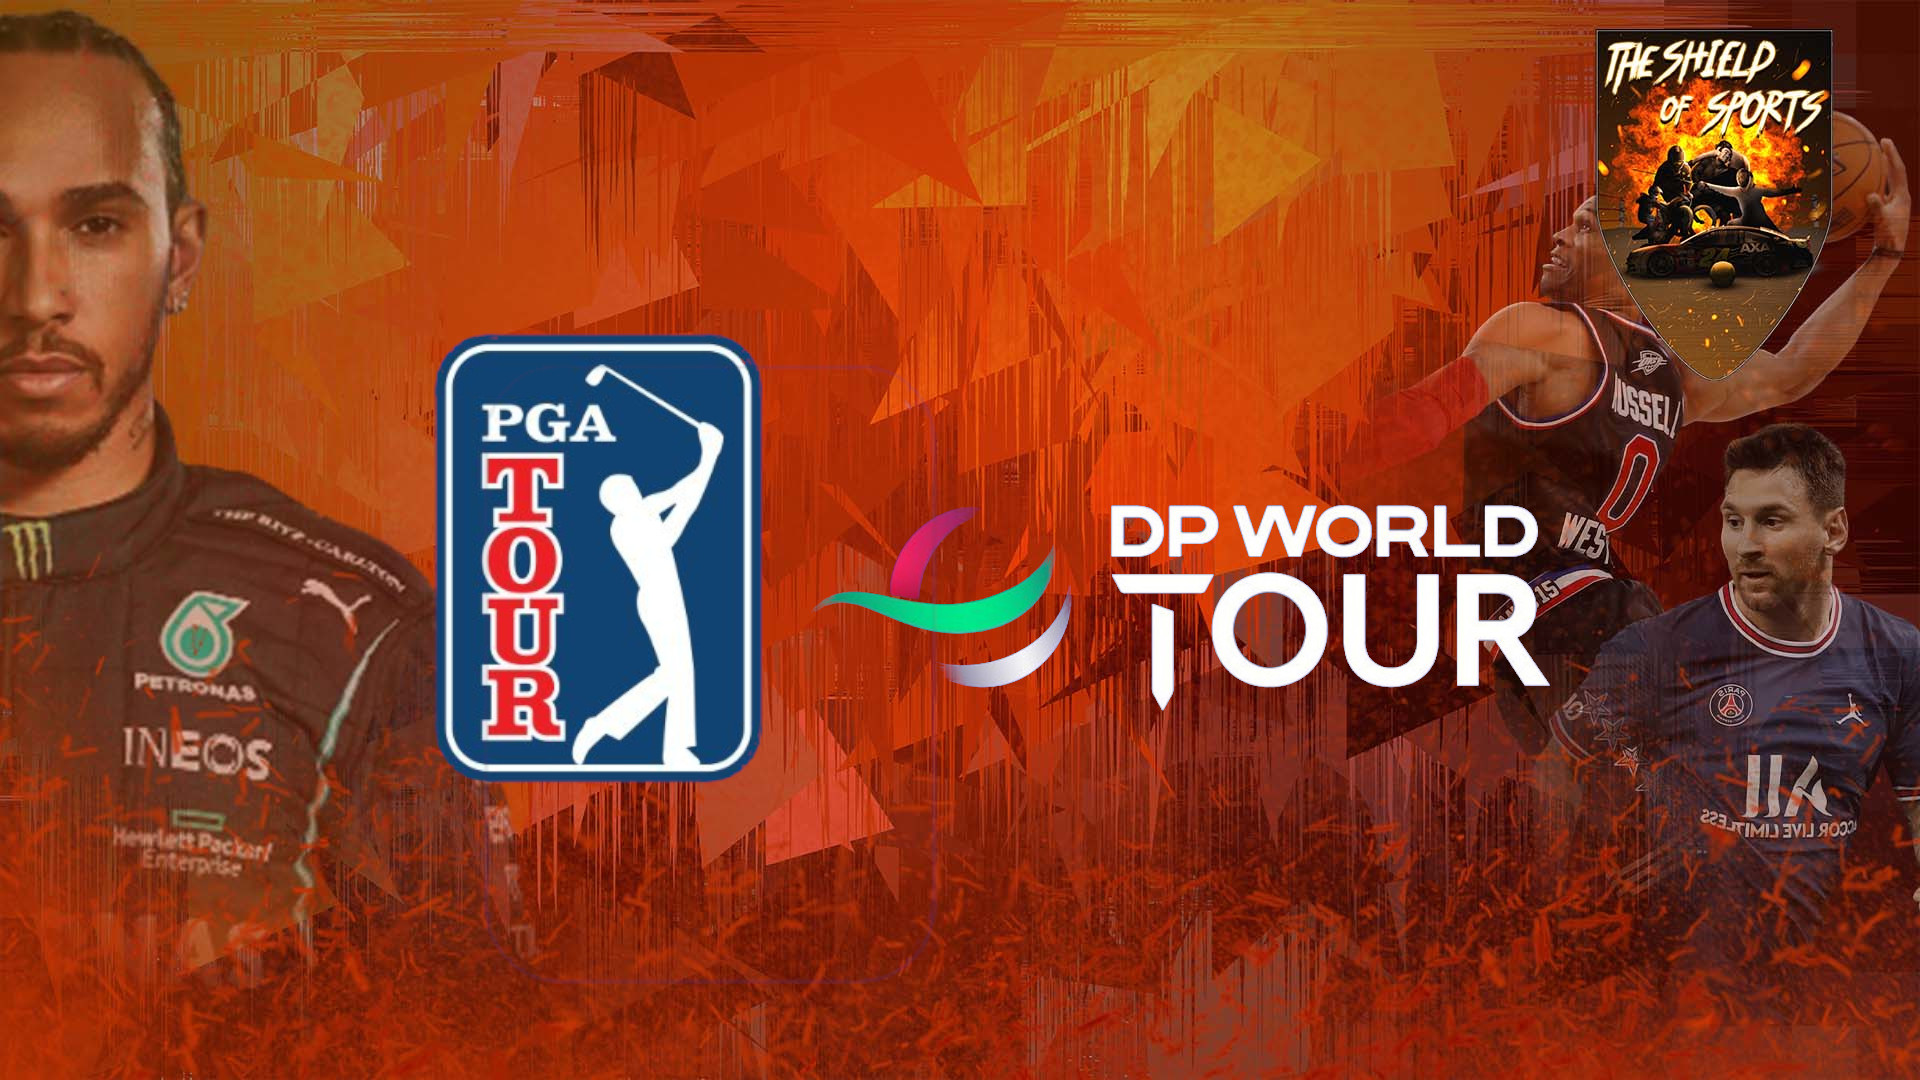 PGA Tour e DP World Tour Prolungano La Partnership Fino Al 2035